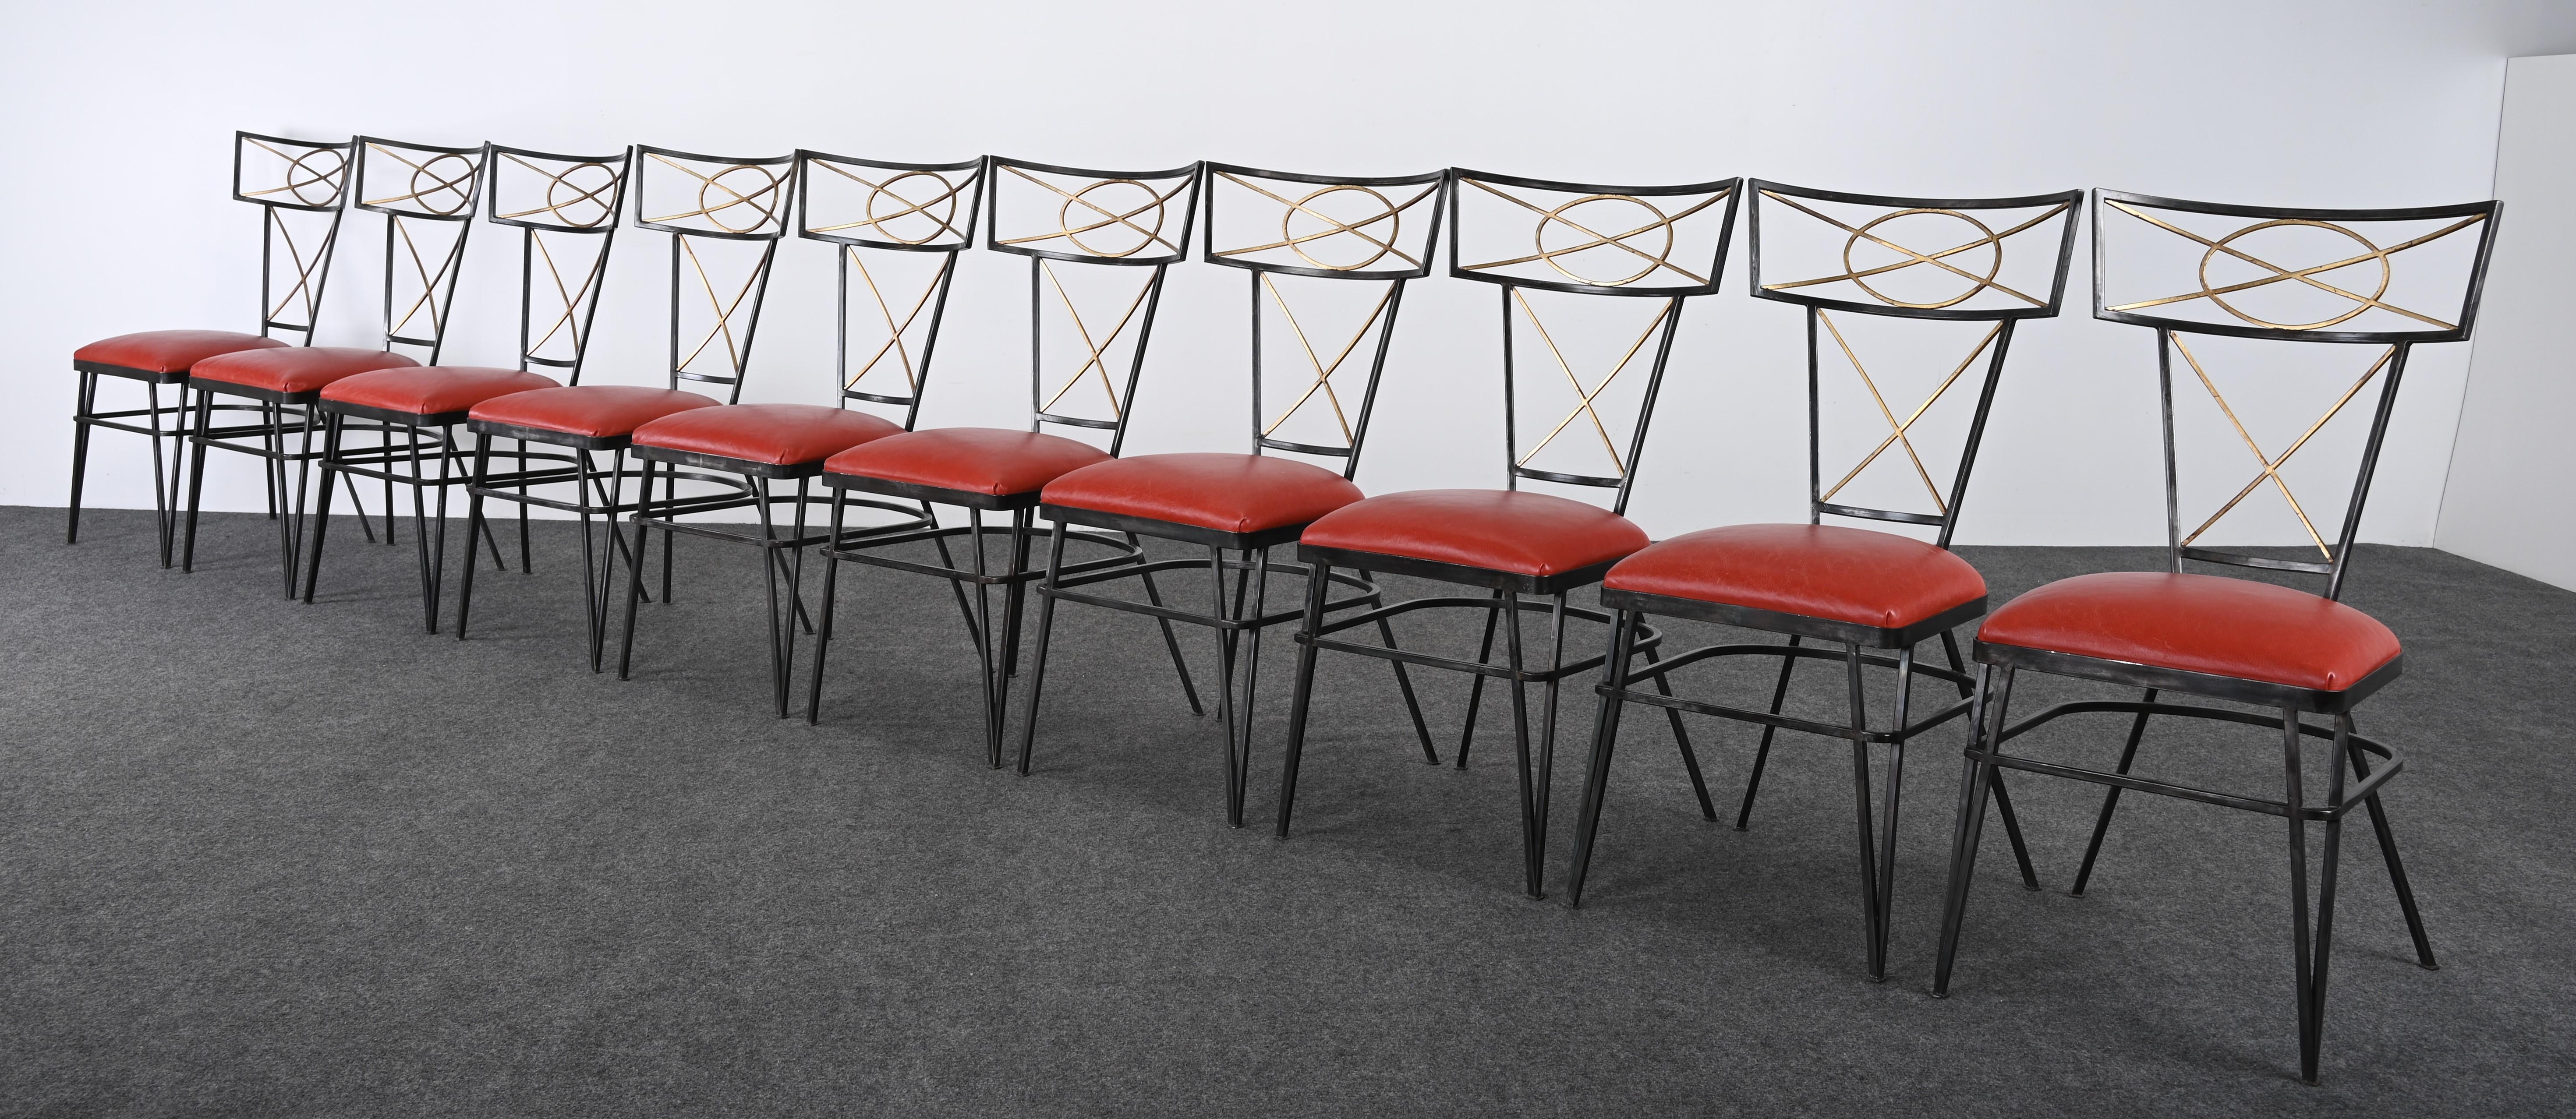 Magnifique ensemble de dix chaises de salle à manger en acier et or doré, fabriquées sur mesure, avec des sièges en cuir. Cet ensemble spectaculaire de chaises est fabriqué à la main, sans aucun joint soudé. La qualité de fabrication de ces chaises